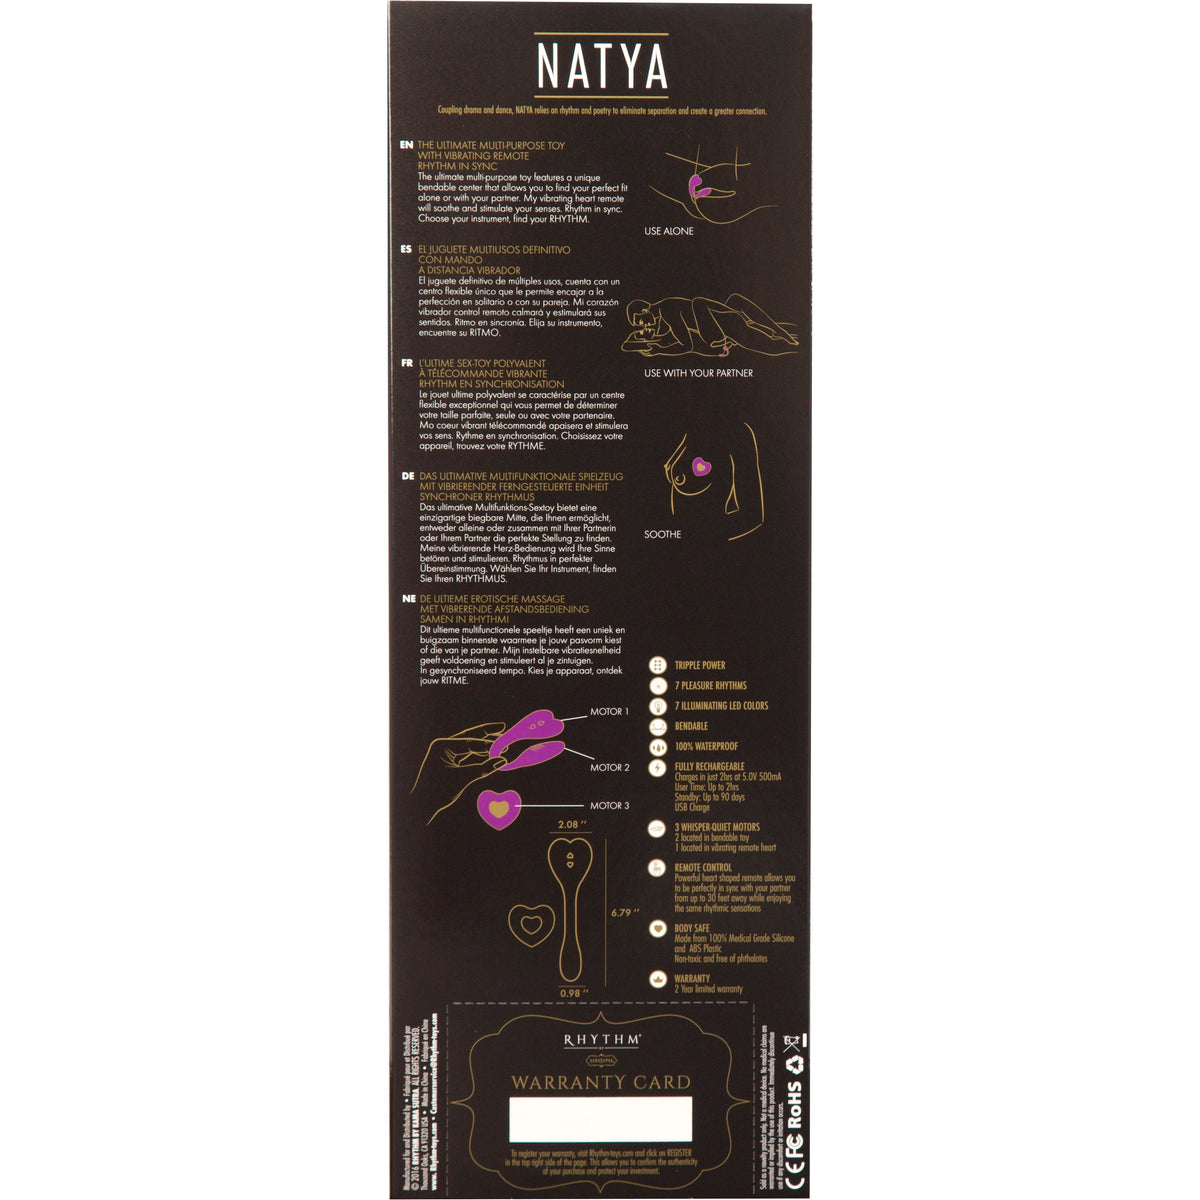 Kama Sutra Rhythm  - Natya - Bendable Vibrator - Black